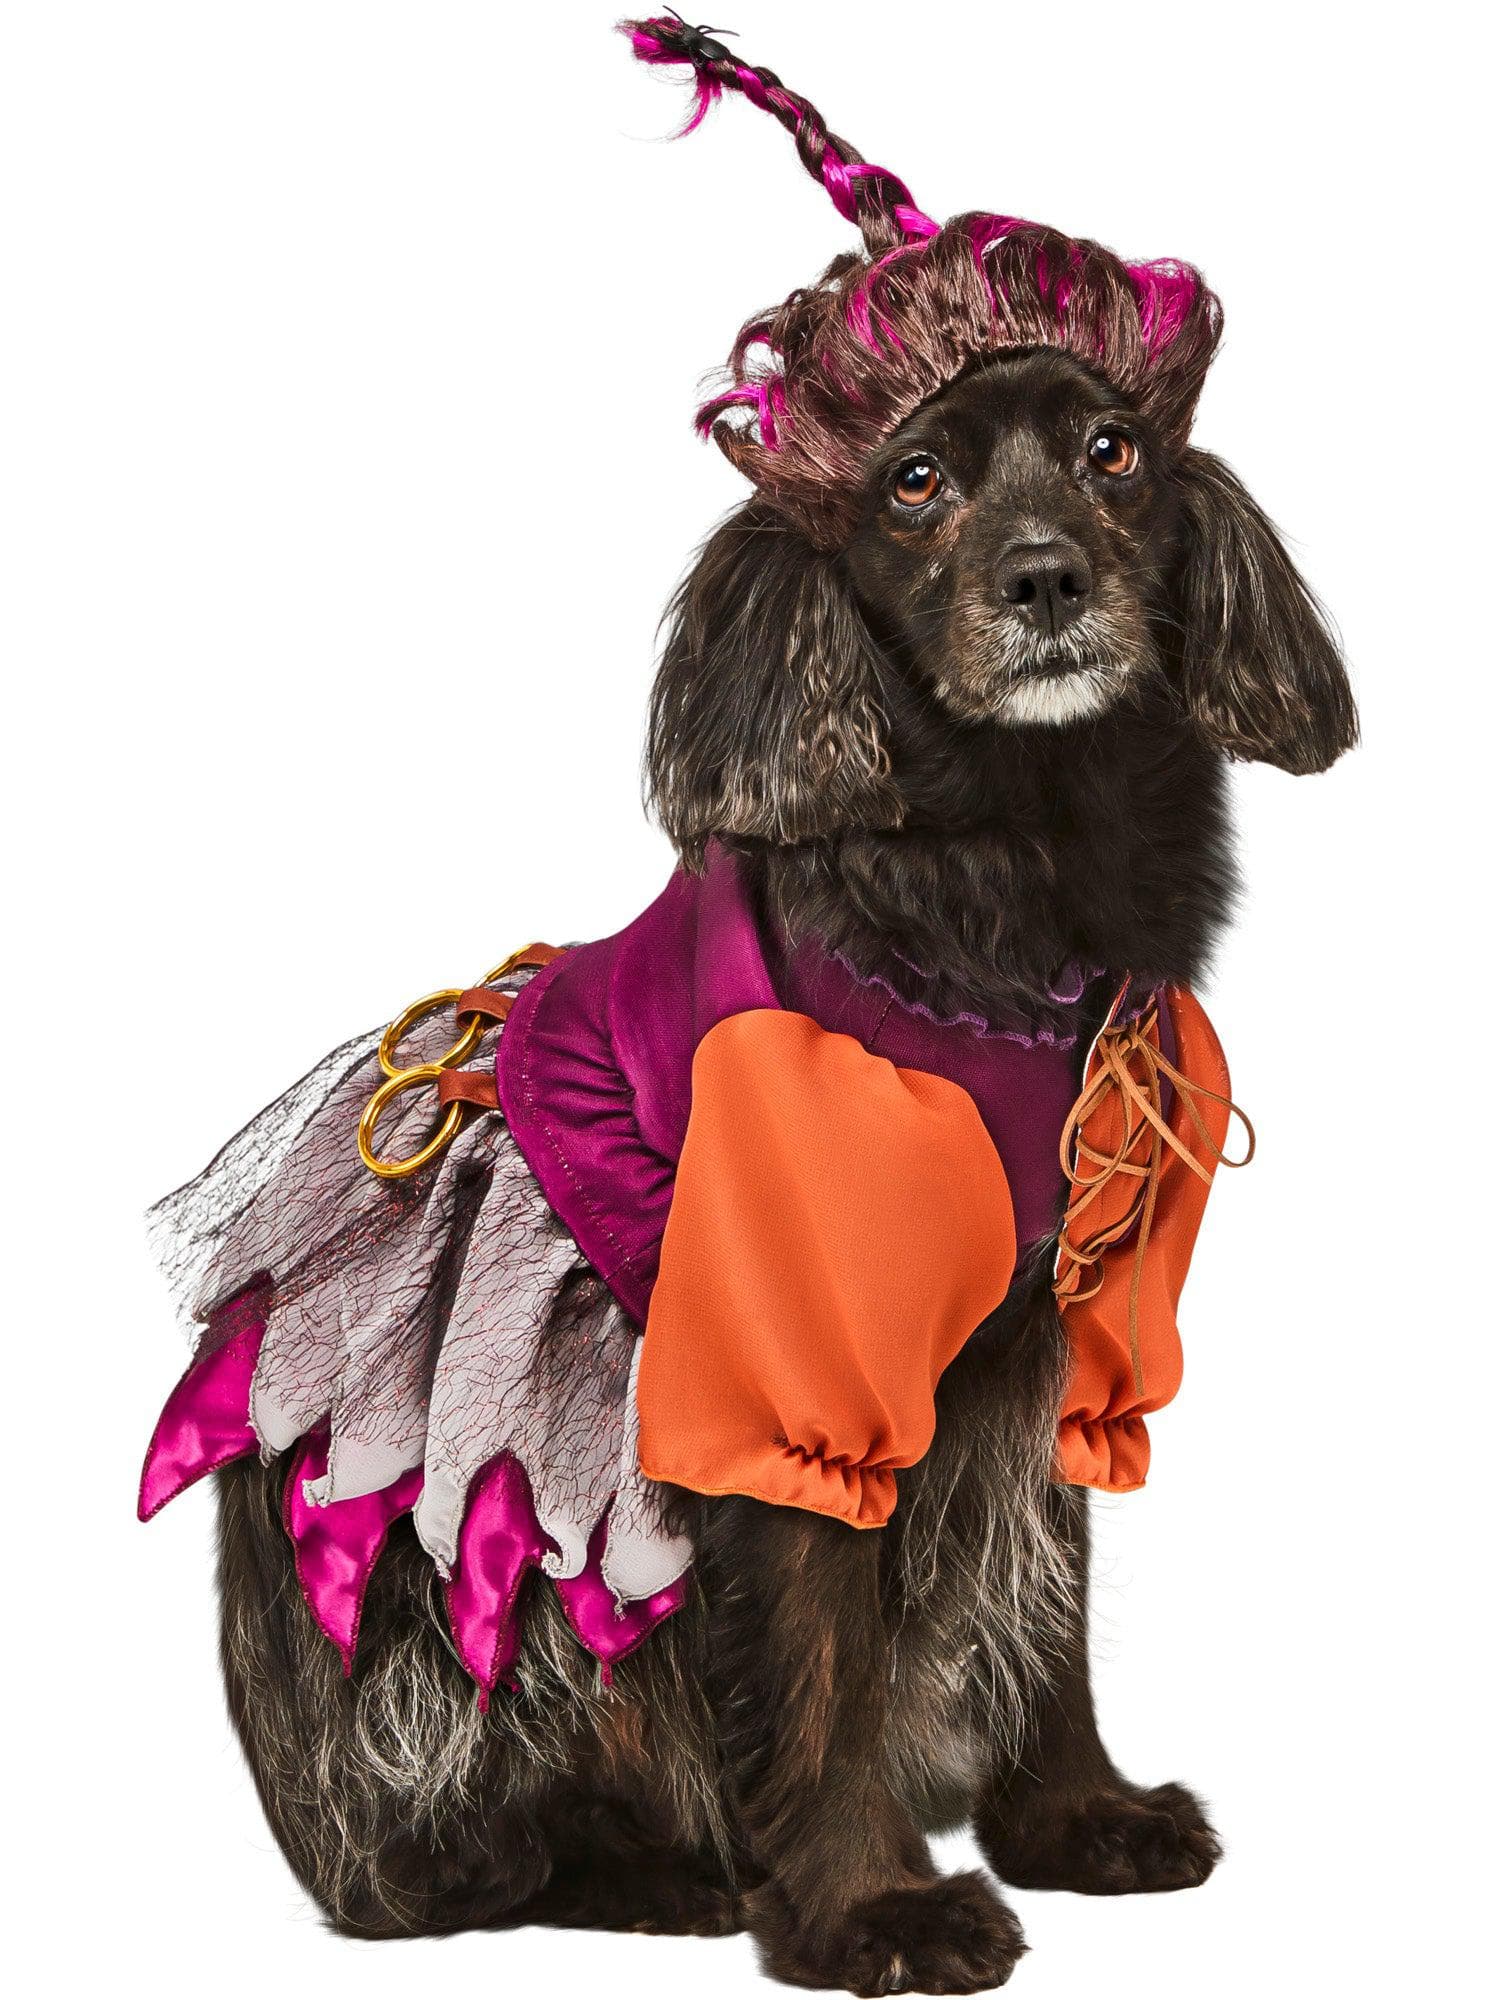 Hocus Pocus Mary Pet Costume - costumes.com